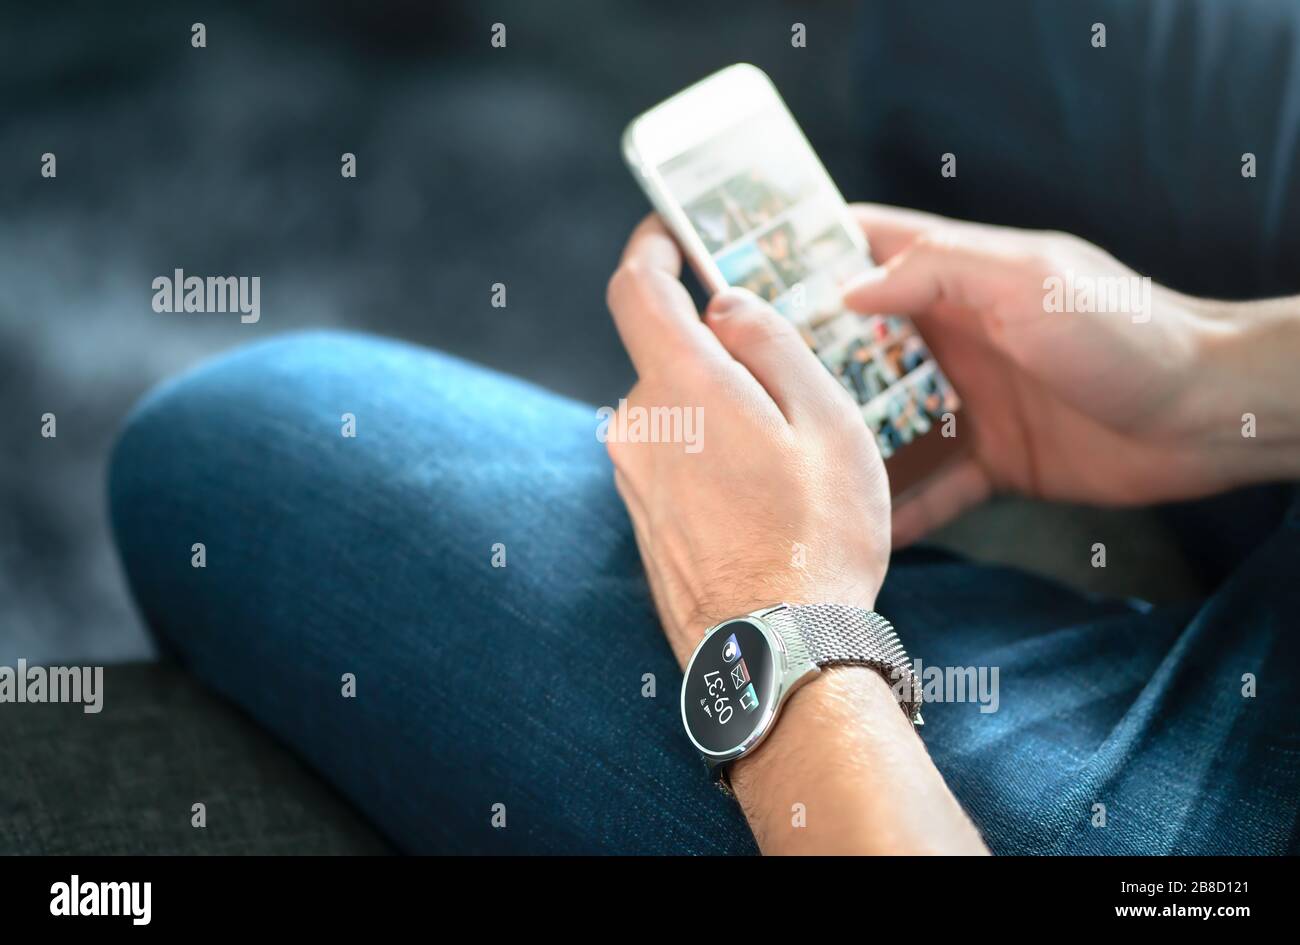 Conexión inalámbrica entre el reloj inteligente y el teléfono móvil. Hombre que utiliza un gadget portátil y una aplicación digital. Persona con futuro reloj de pulsera en la mano. Foto de stock